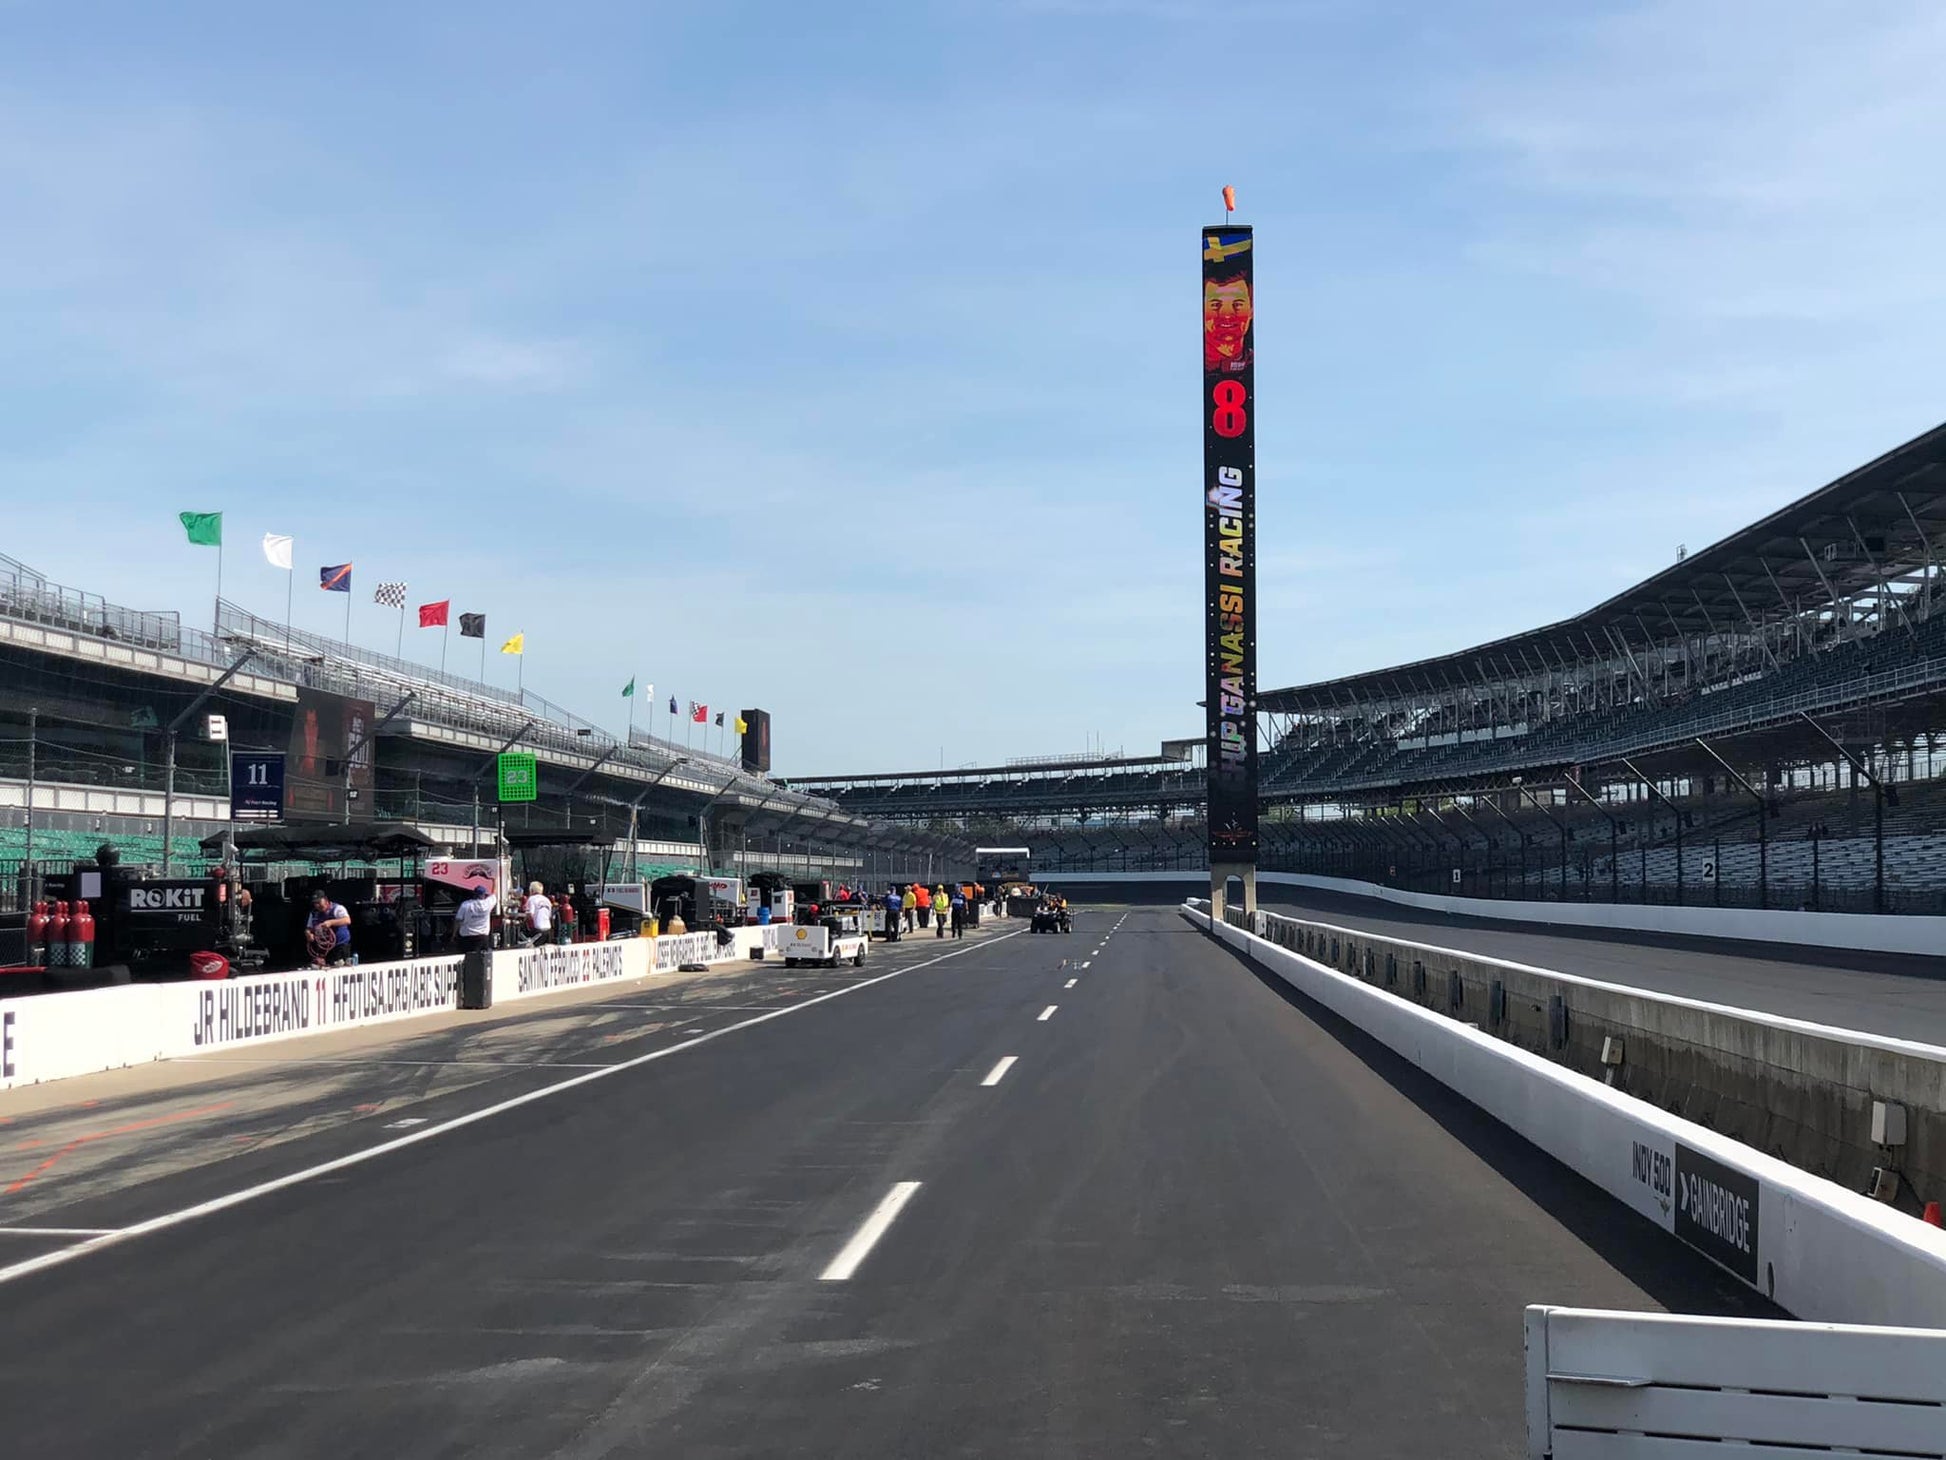 Indianapolis 500... une piste ovale impressionnante. Une course hors normes, à découvrir !